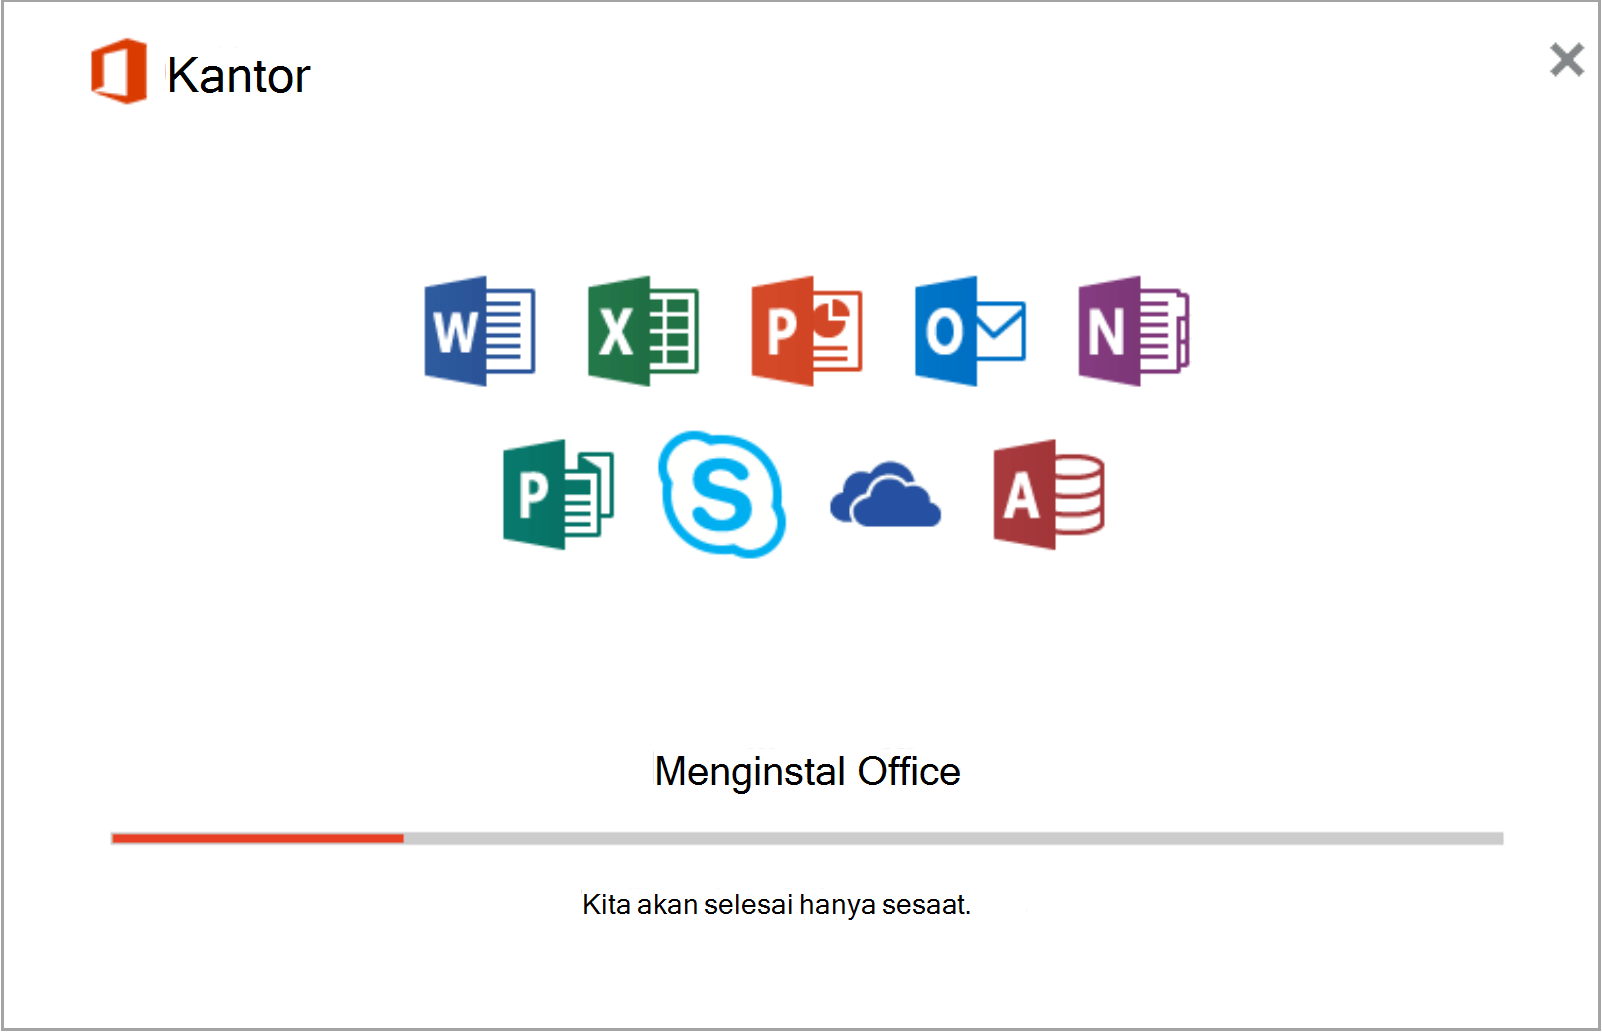 Cara Download Microsoft Word Di Laptop. Mengunduh dan menginstal atau menginstal ulang Office 2019, Office 2016, atau Office 2013